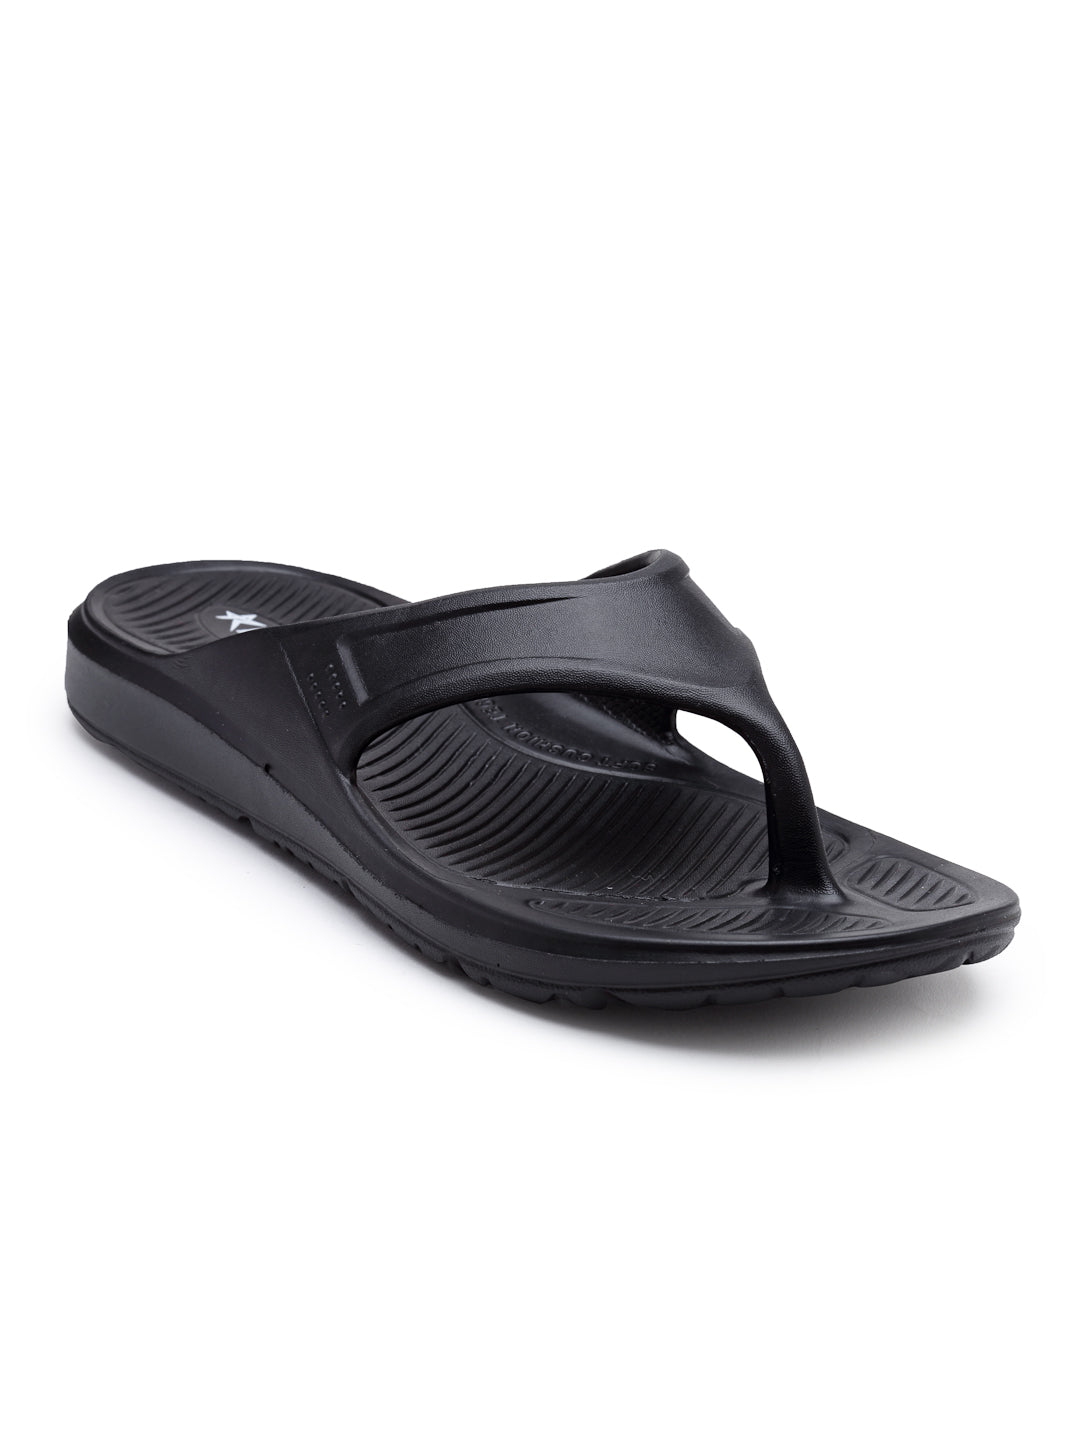 BLACK Solid EVA Rubber Slip On Casual Slippers For Men